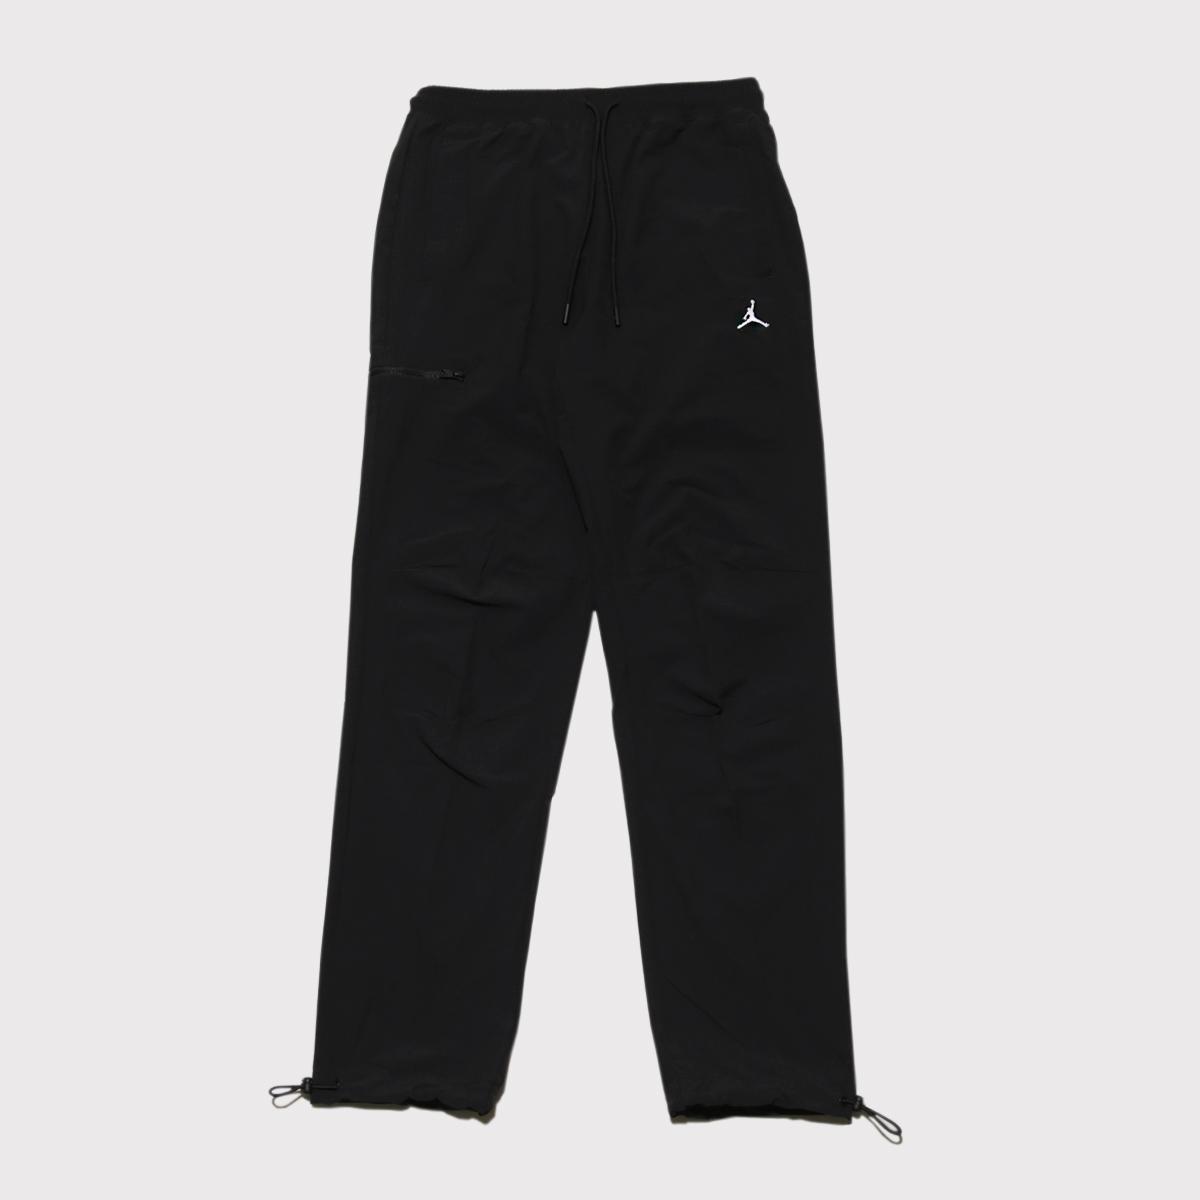 Calça Jordan Essentials Men's Woven Pants Black